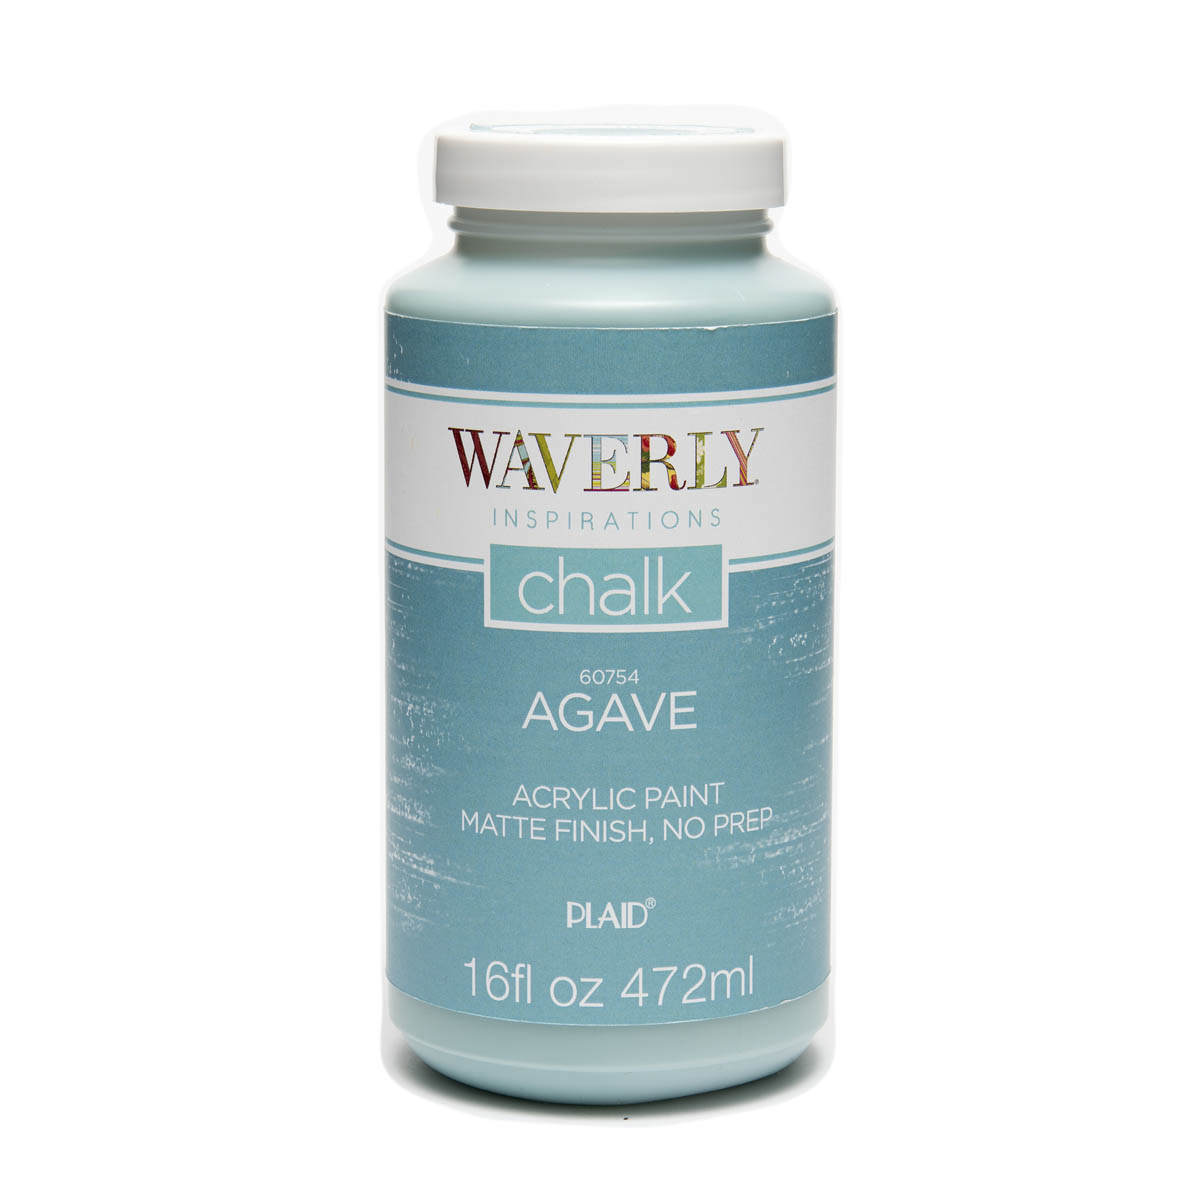 Waverly ® Inspirations Chalk Finish Acrylic Paint - Agave, 16 oz. - 60754E